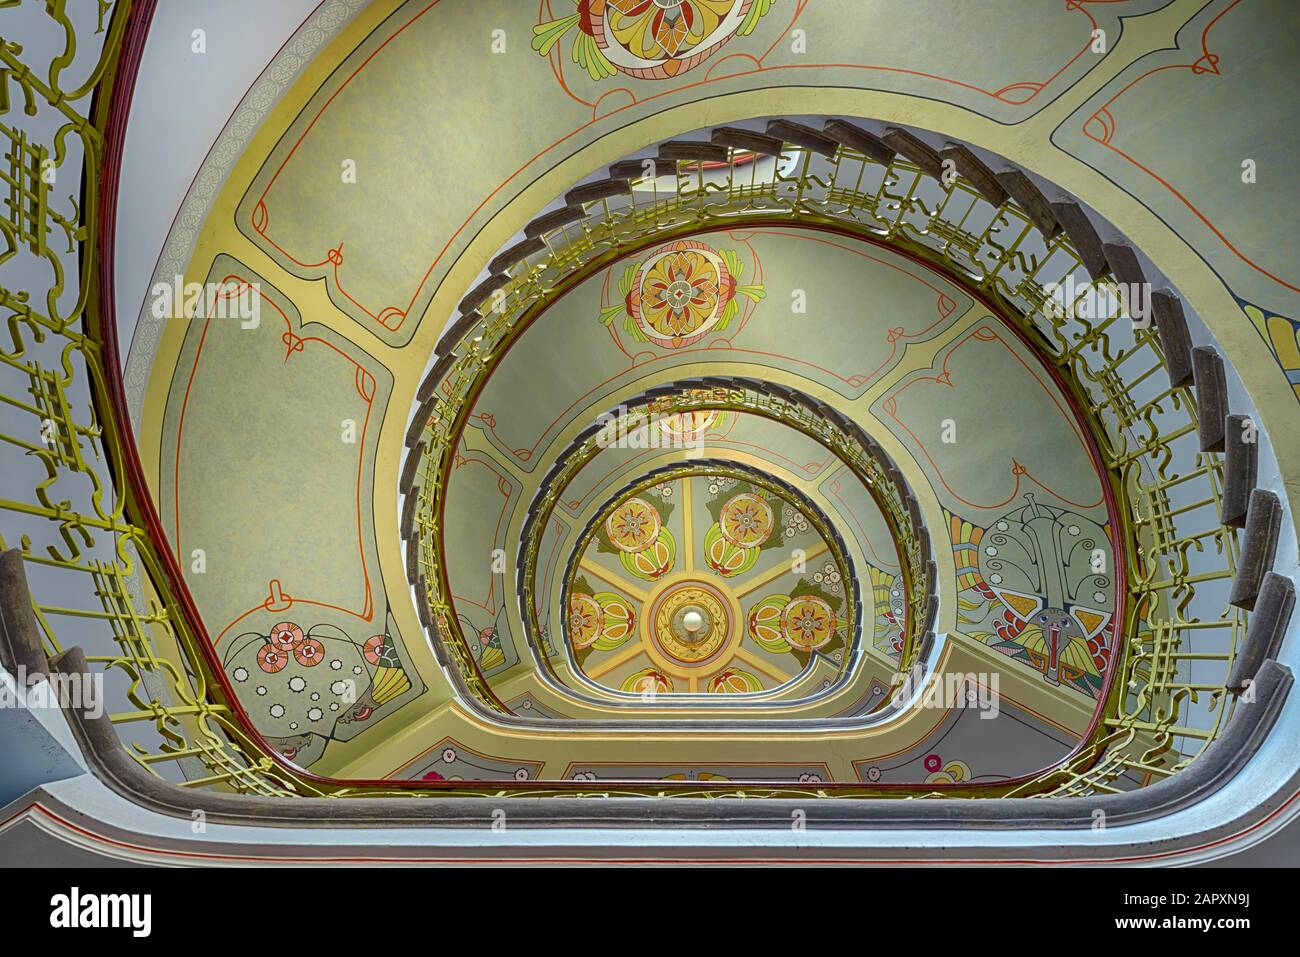 Escalier Incurvé, Escalier, Art Nouveau, Musée Art Nouveau, Riga, Lettonie Banque D'Images